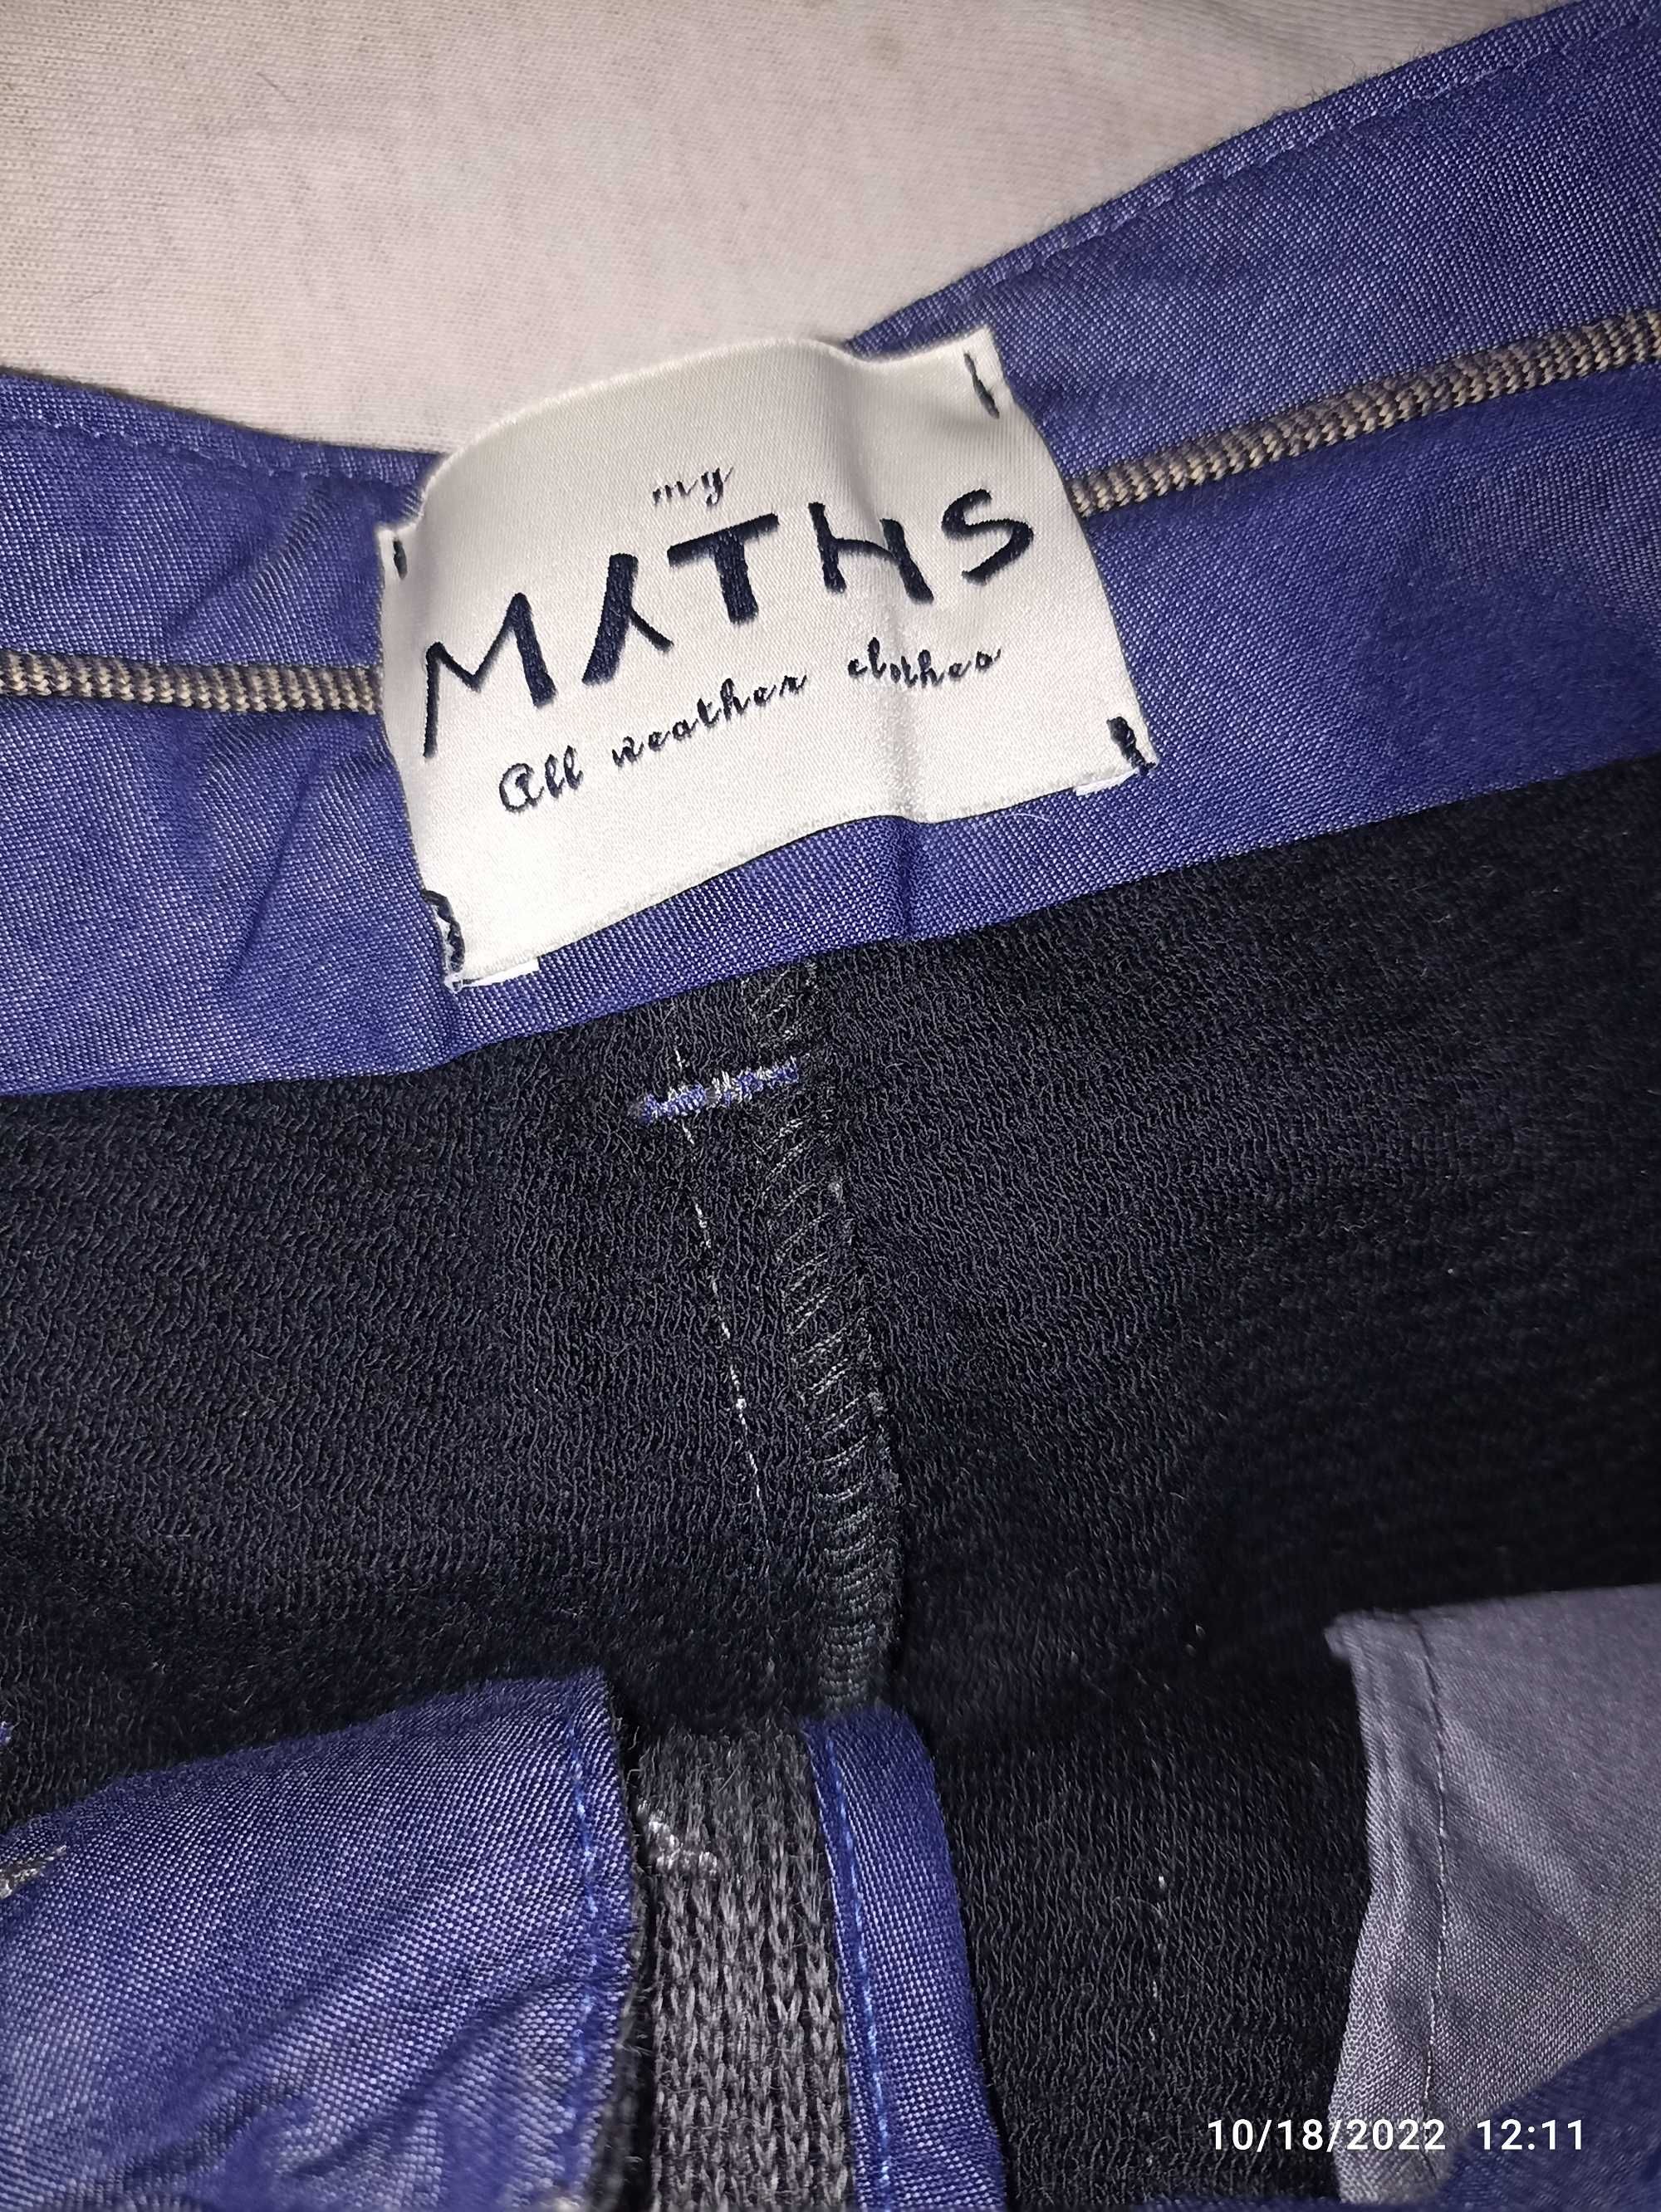 Pantaloni Eleganti MATHS 50% Lana + 50 Bumbac . Made in Italy !